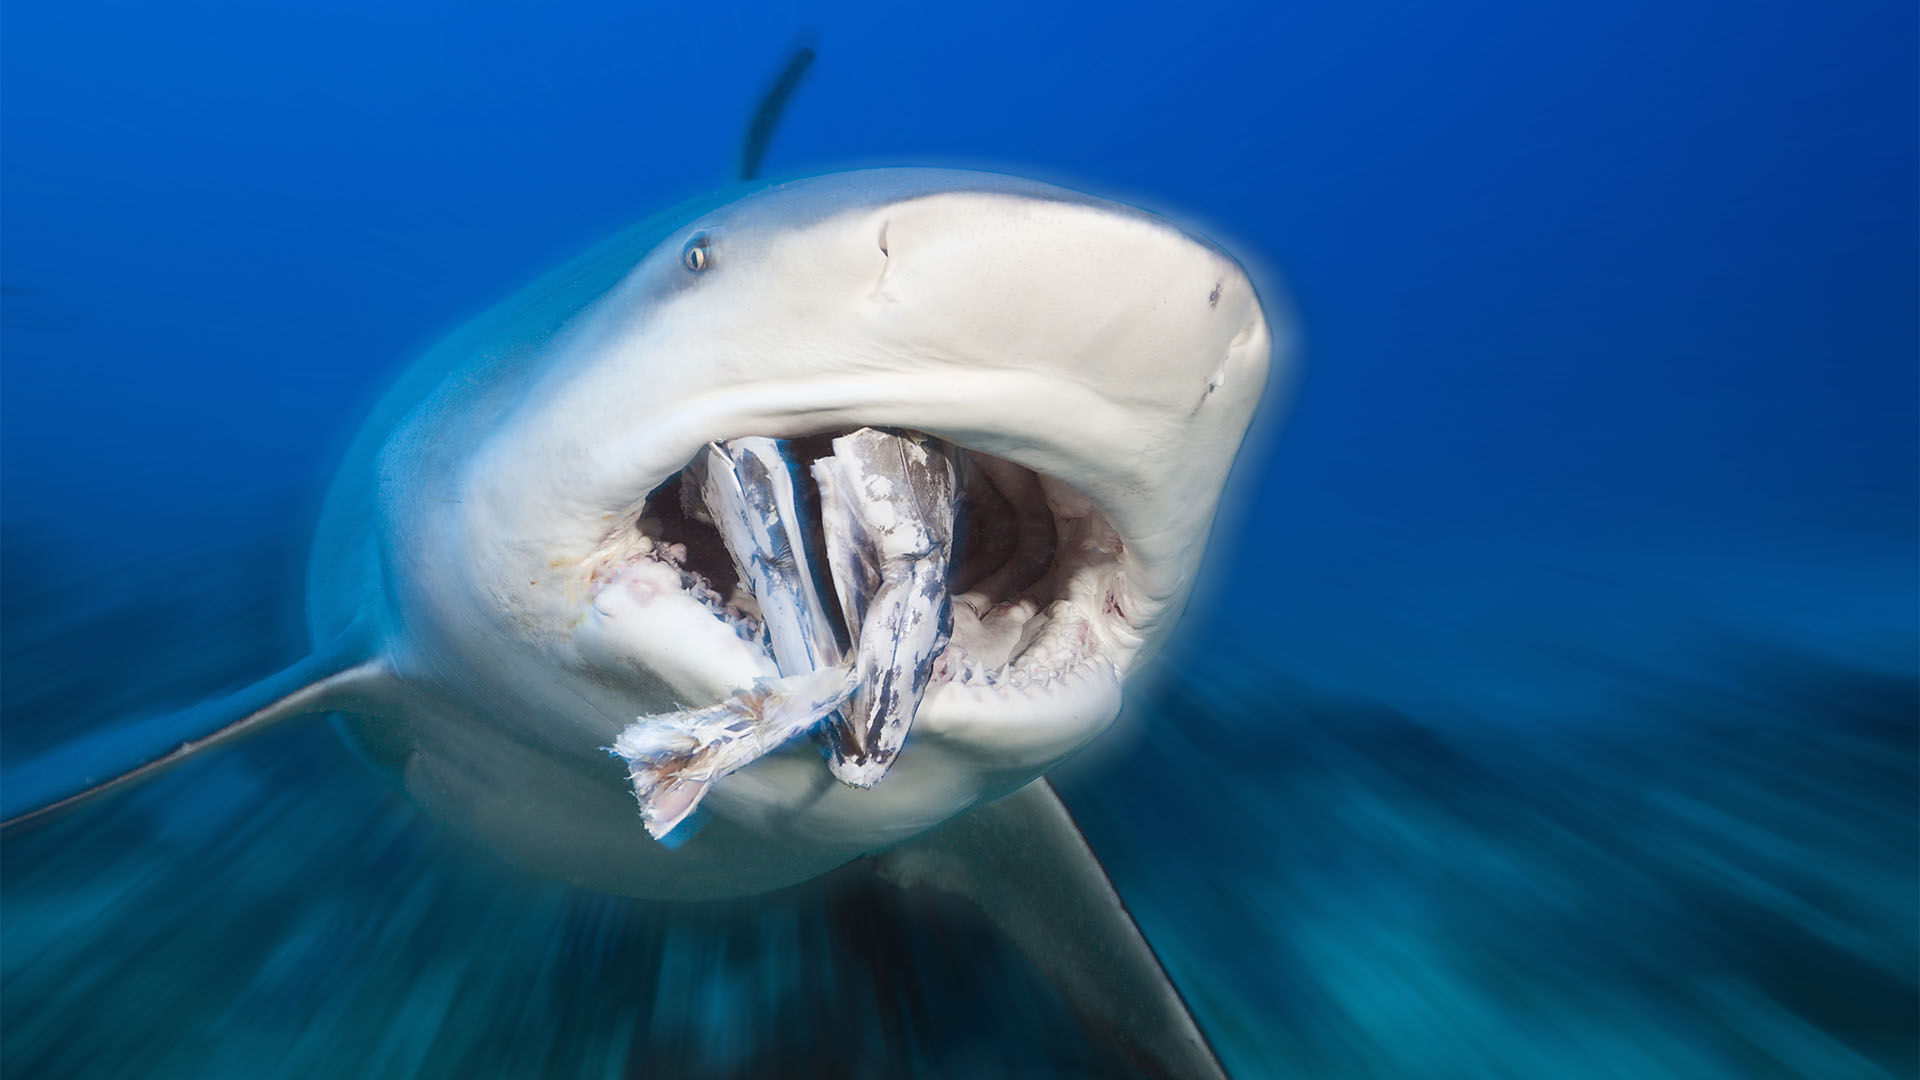 Los expertos coinciden en que las agresiones de tiburones a humanos son extremadamente raras y casi nunca mortales